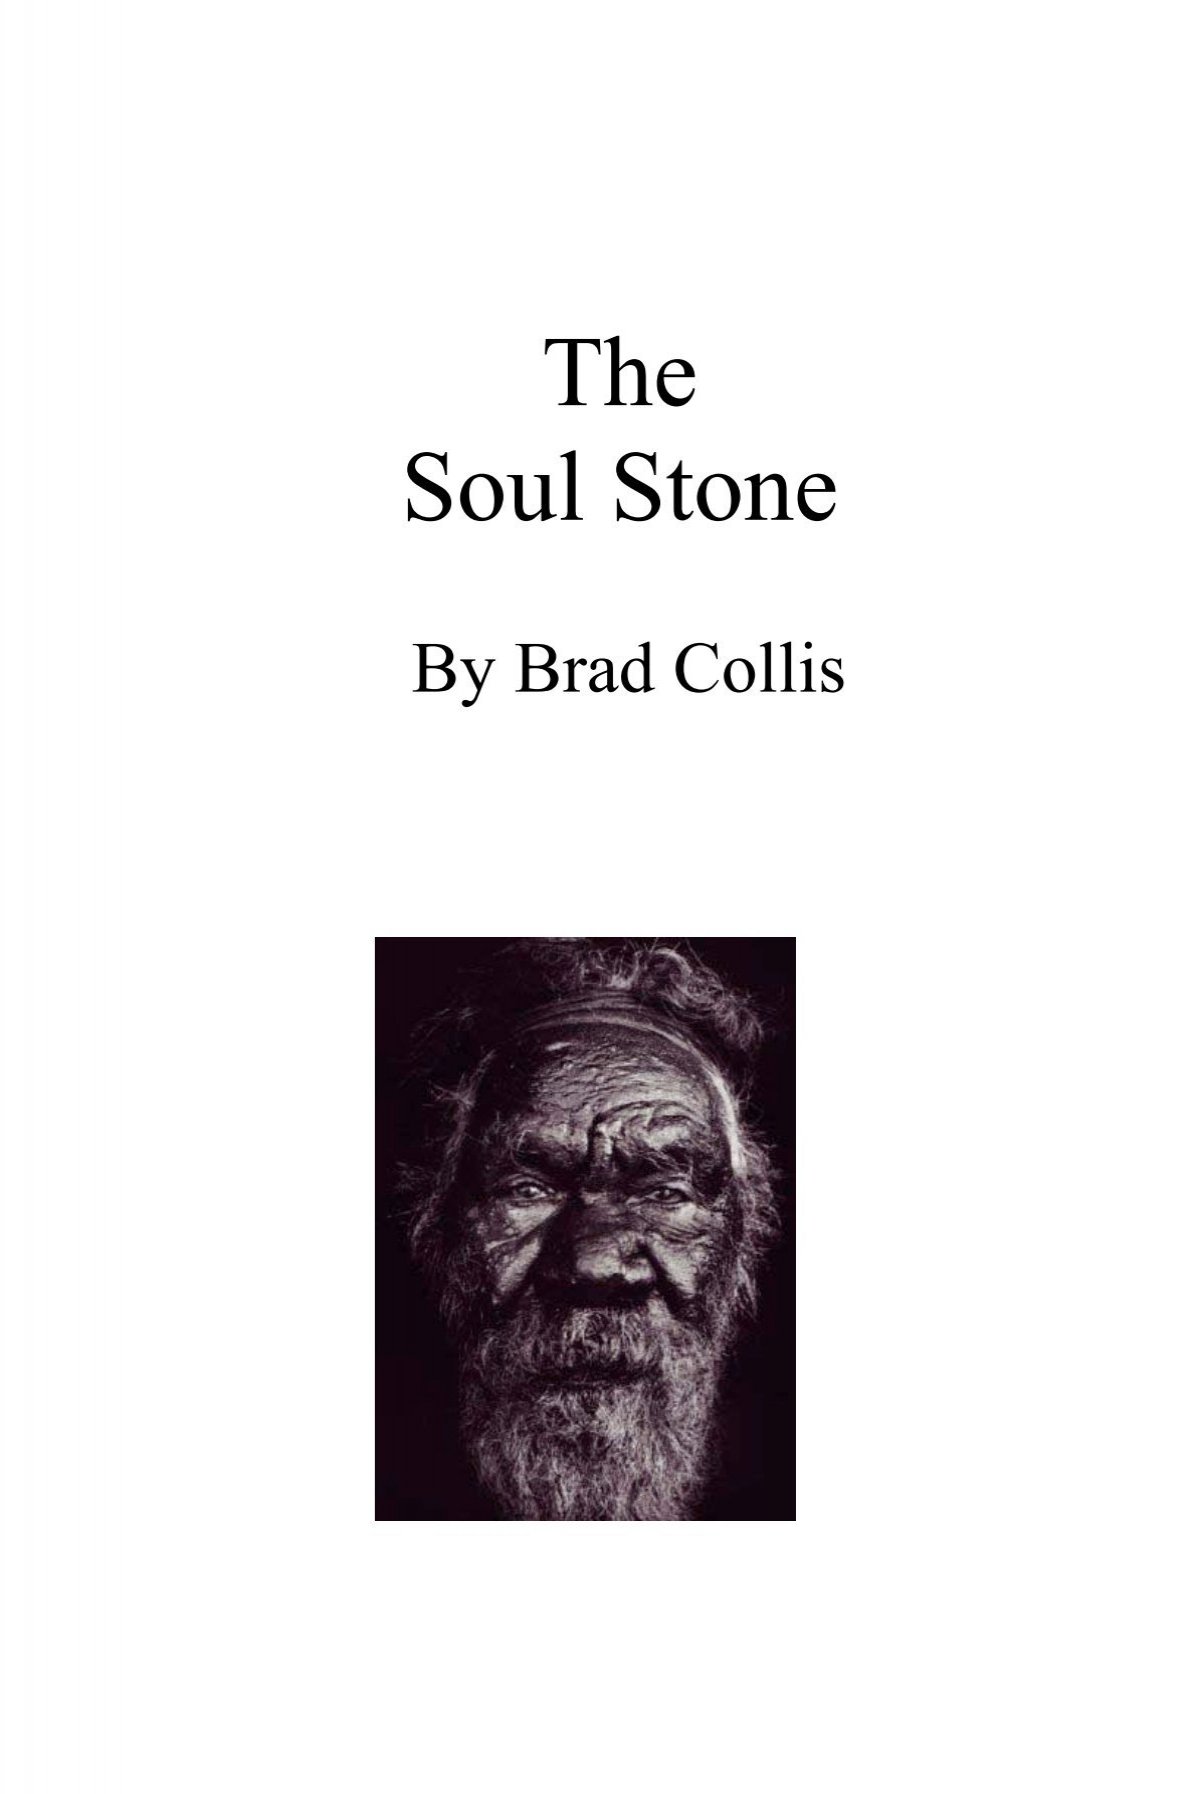 The Soul Stone, a novel by Brad Collis